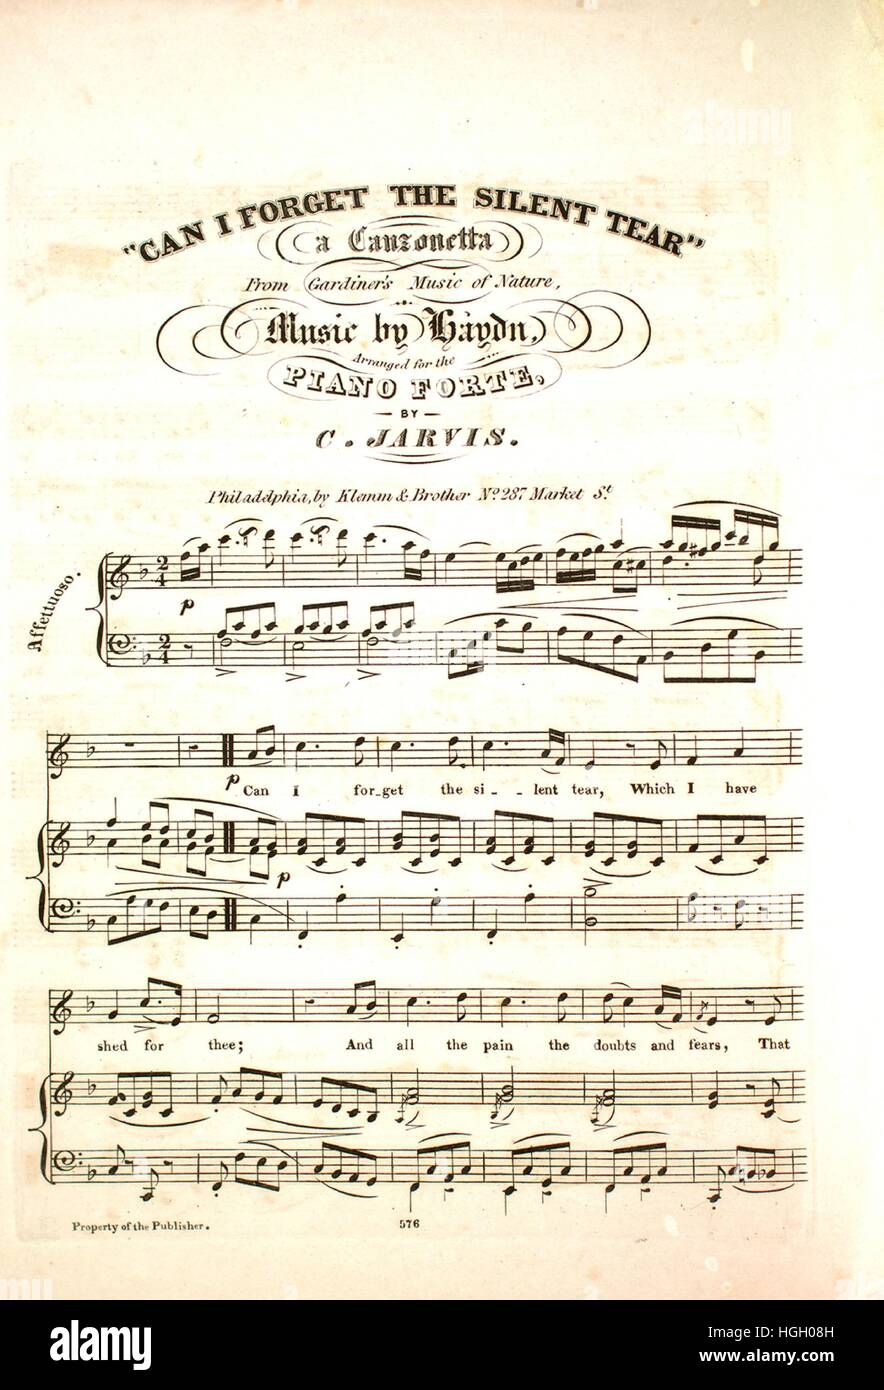 Imagen de cubierta de partituras de la canción "No puedo olvidar la lágrima  silenciosa una Canzonetta de Gardiner, la música de la Naturaleza", con  notas de autoría original leyendo 'Música de Haydn